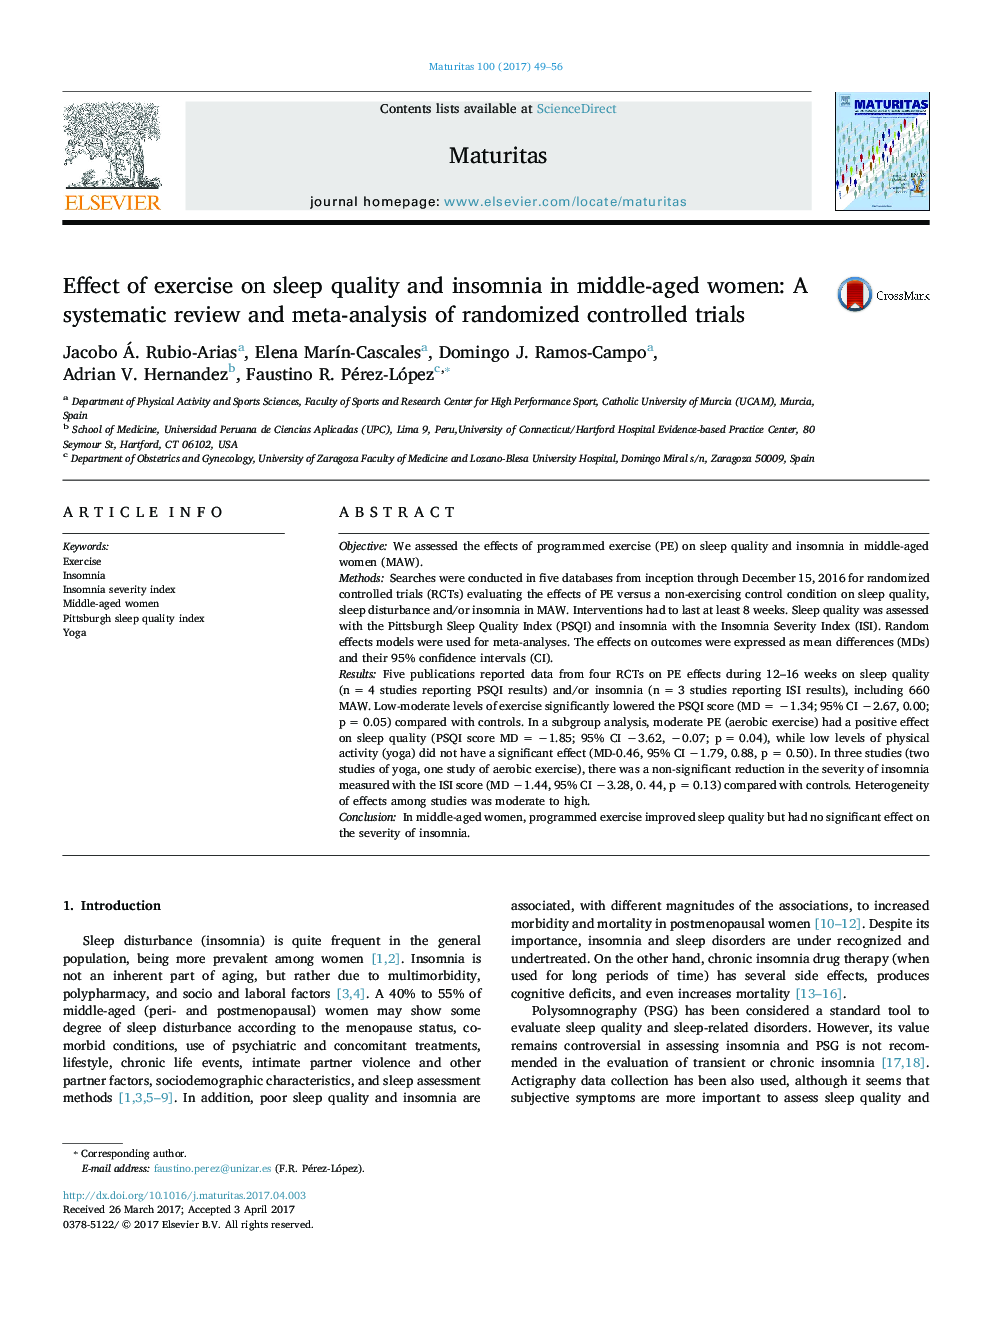 تأثیر ورزش بر کیفیت خواب و بیخوابی در زنان میانسال: یک بررسی سیستماتیک و متاآنالیز آزمایشات تصادفی کنترل شده 